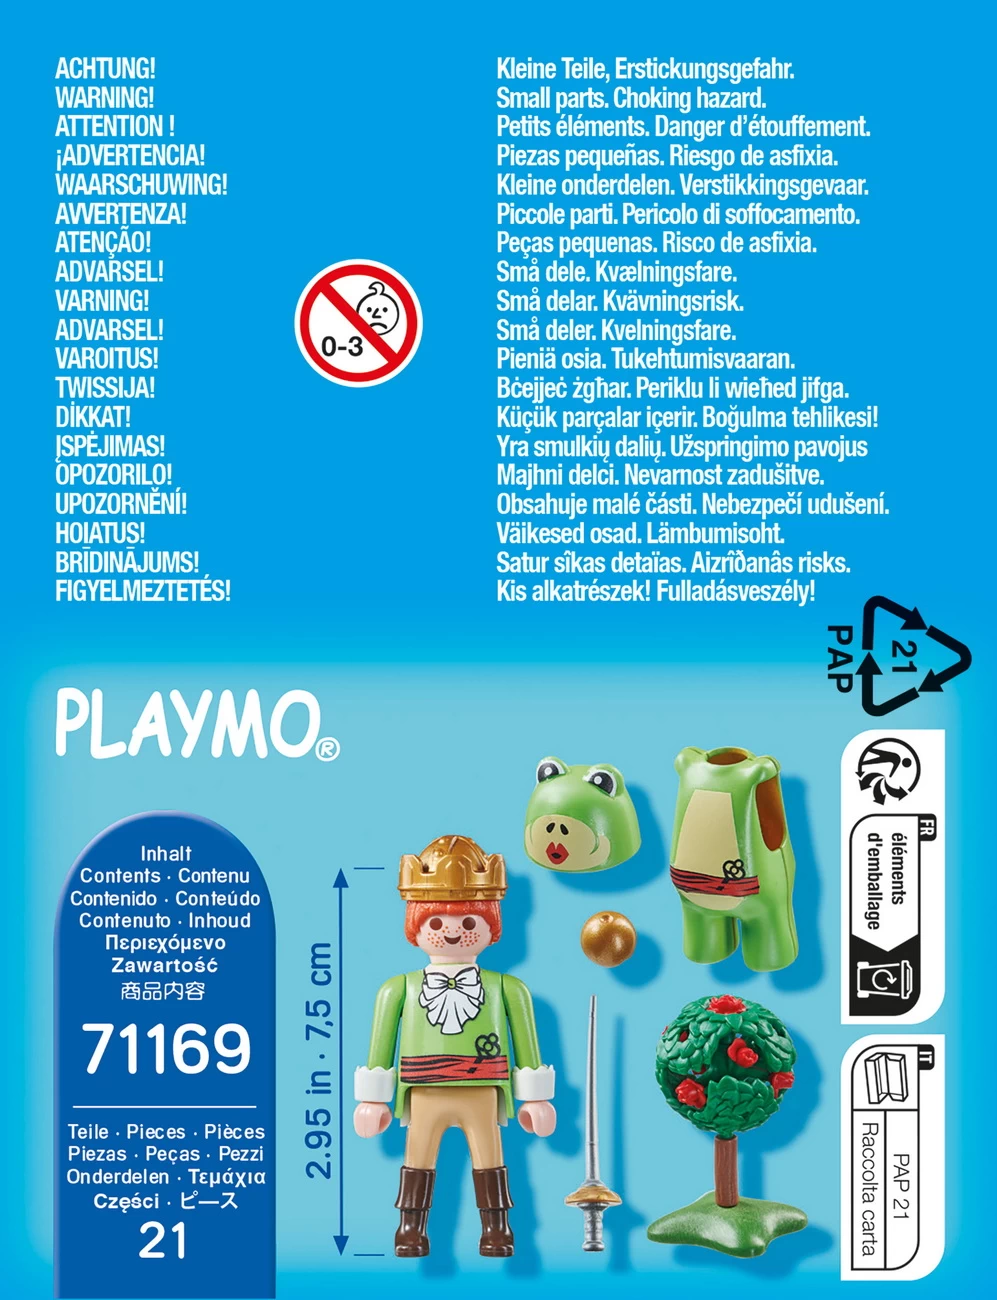 Playmobil 71169 - Froschkönig - Special Plus